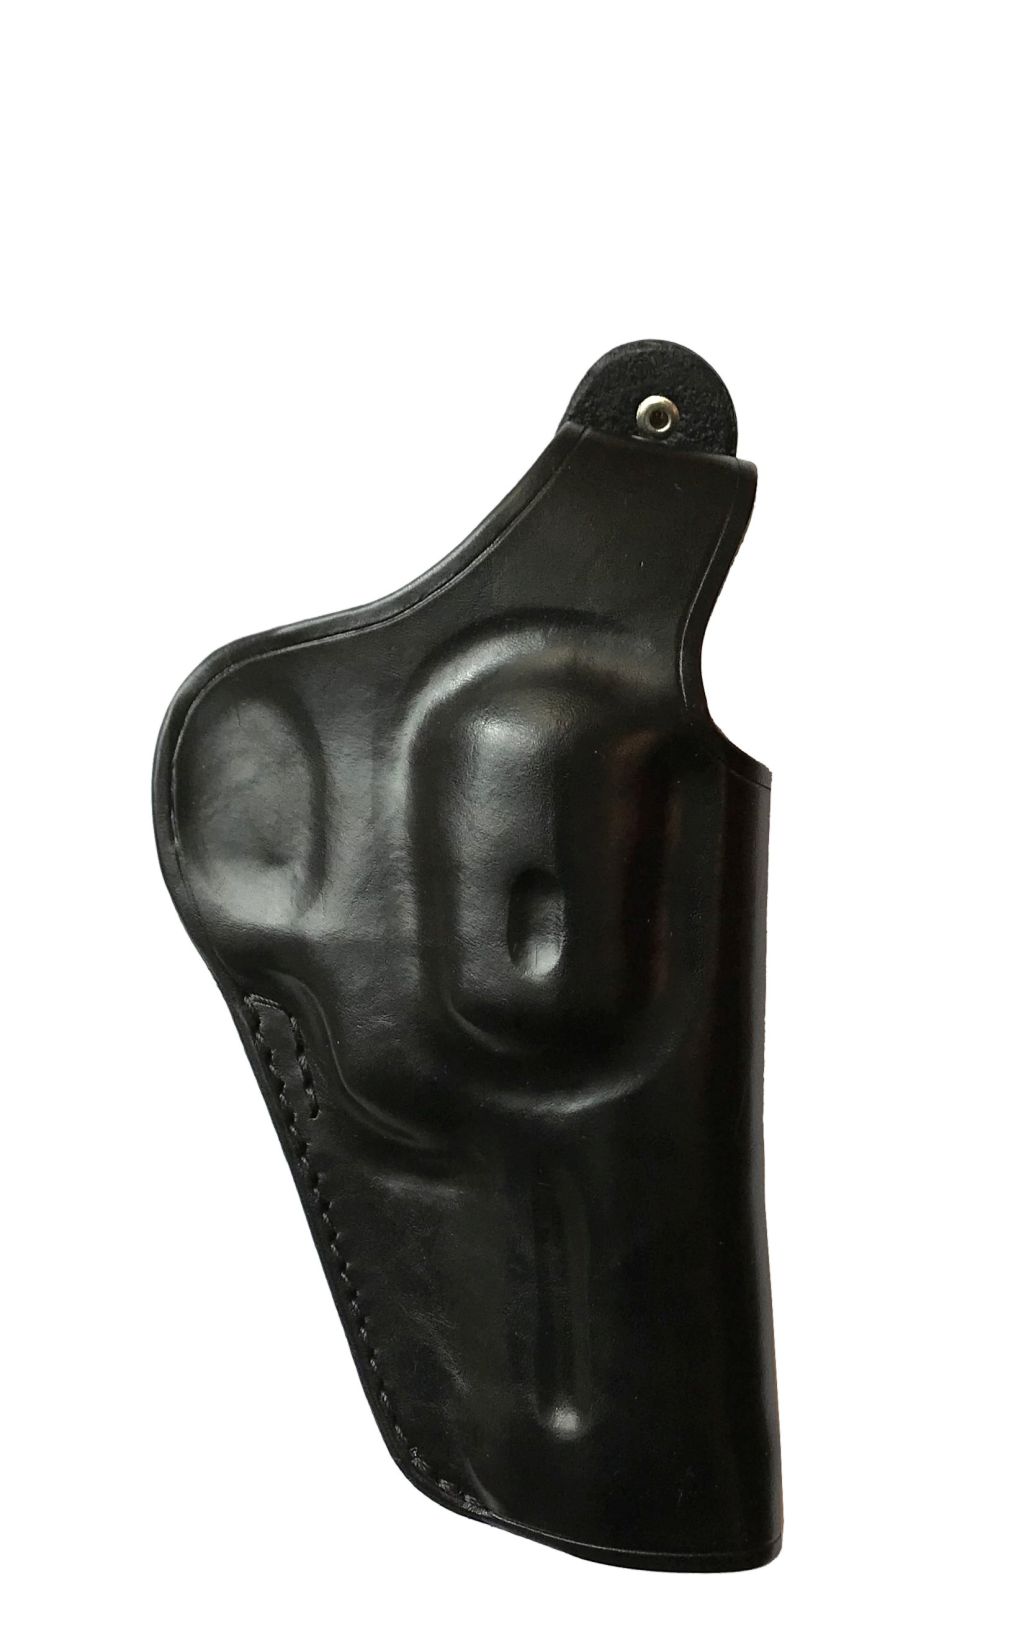 Steel Cop Lederholster für 3 Zoll Revolver schwarz für den Gürtel